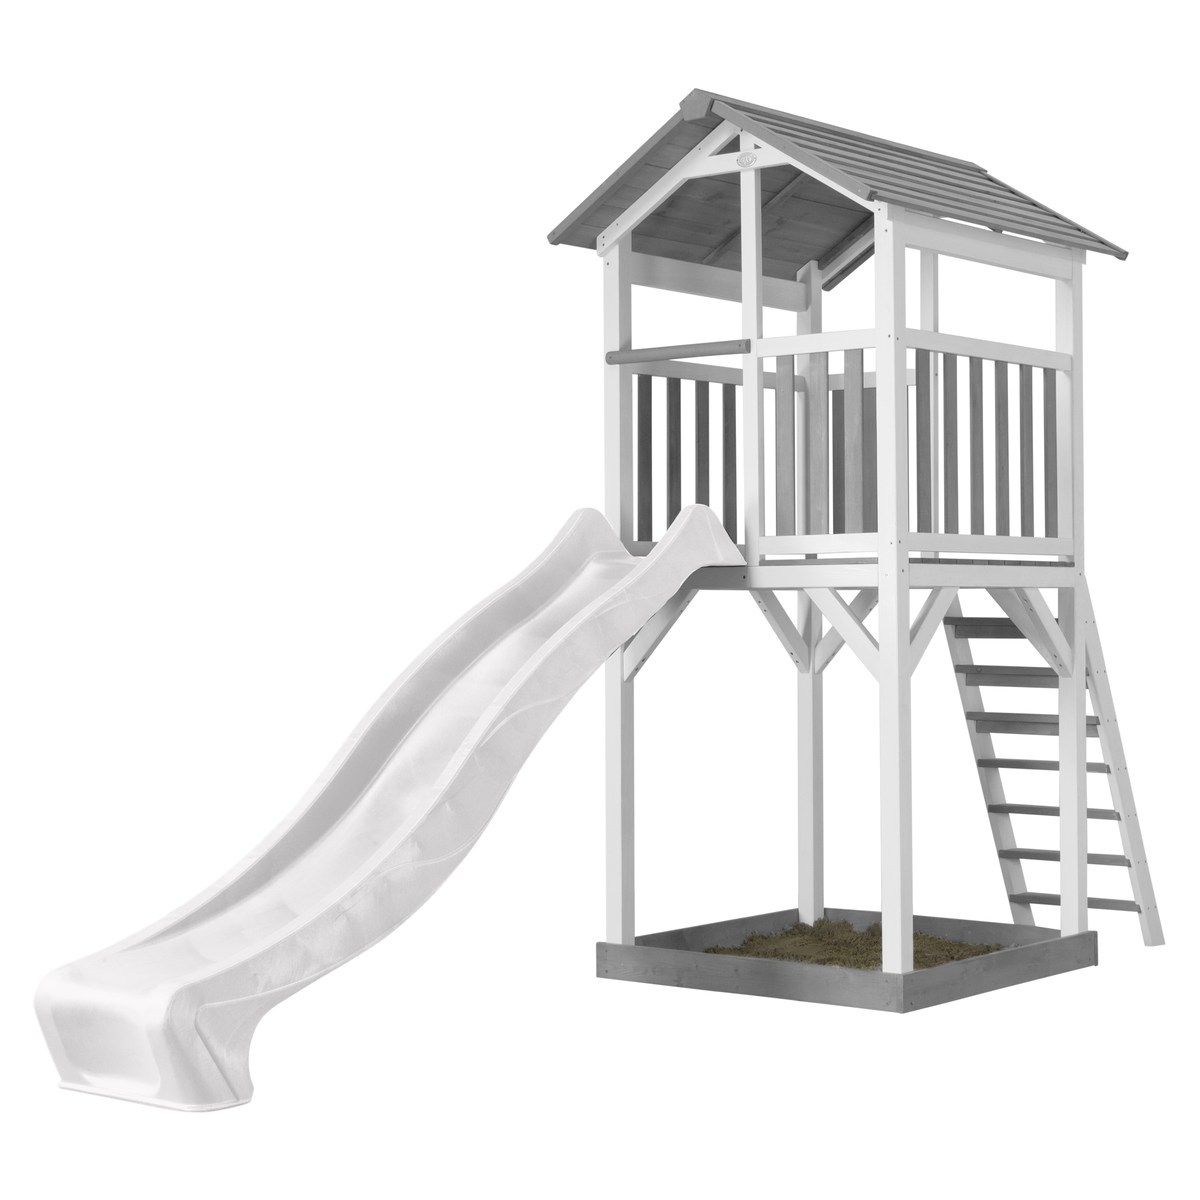 Spielturm Beach Tower Basic grau/weiß mit Rutsche weiß